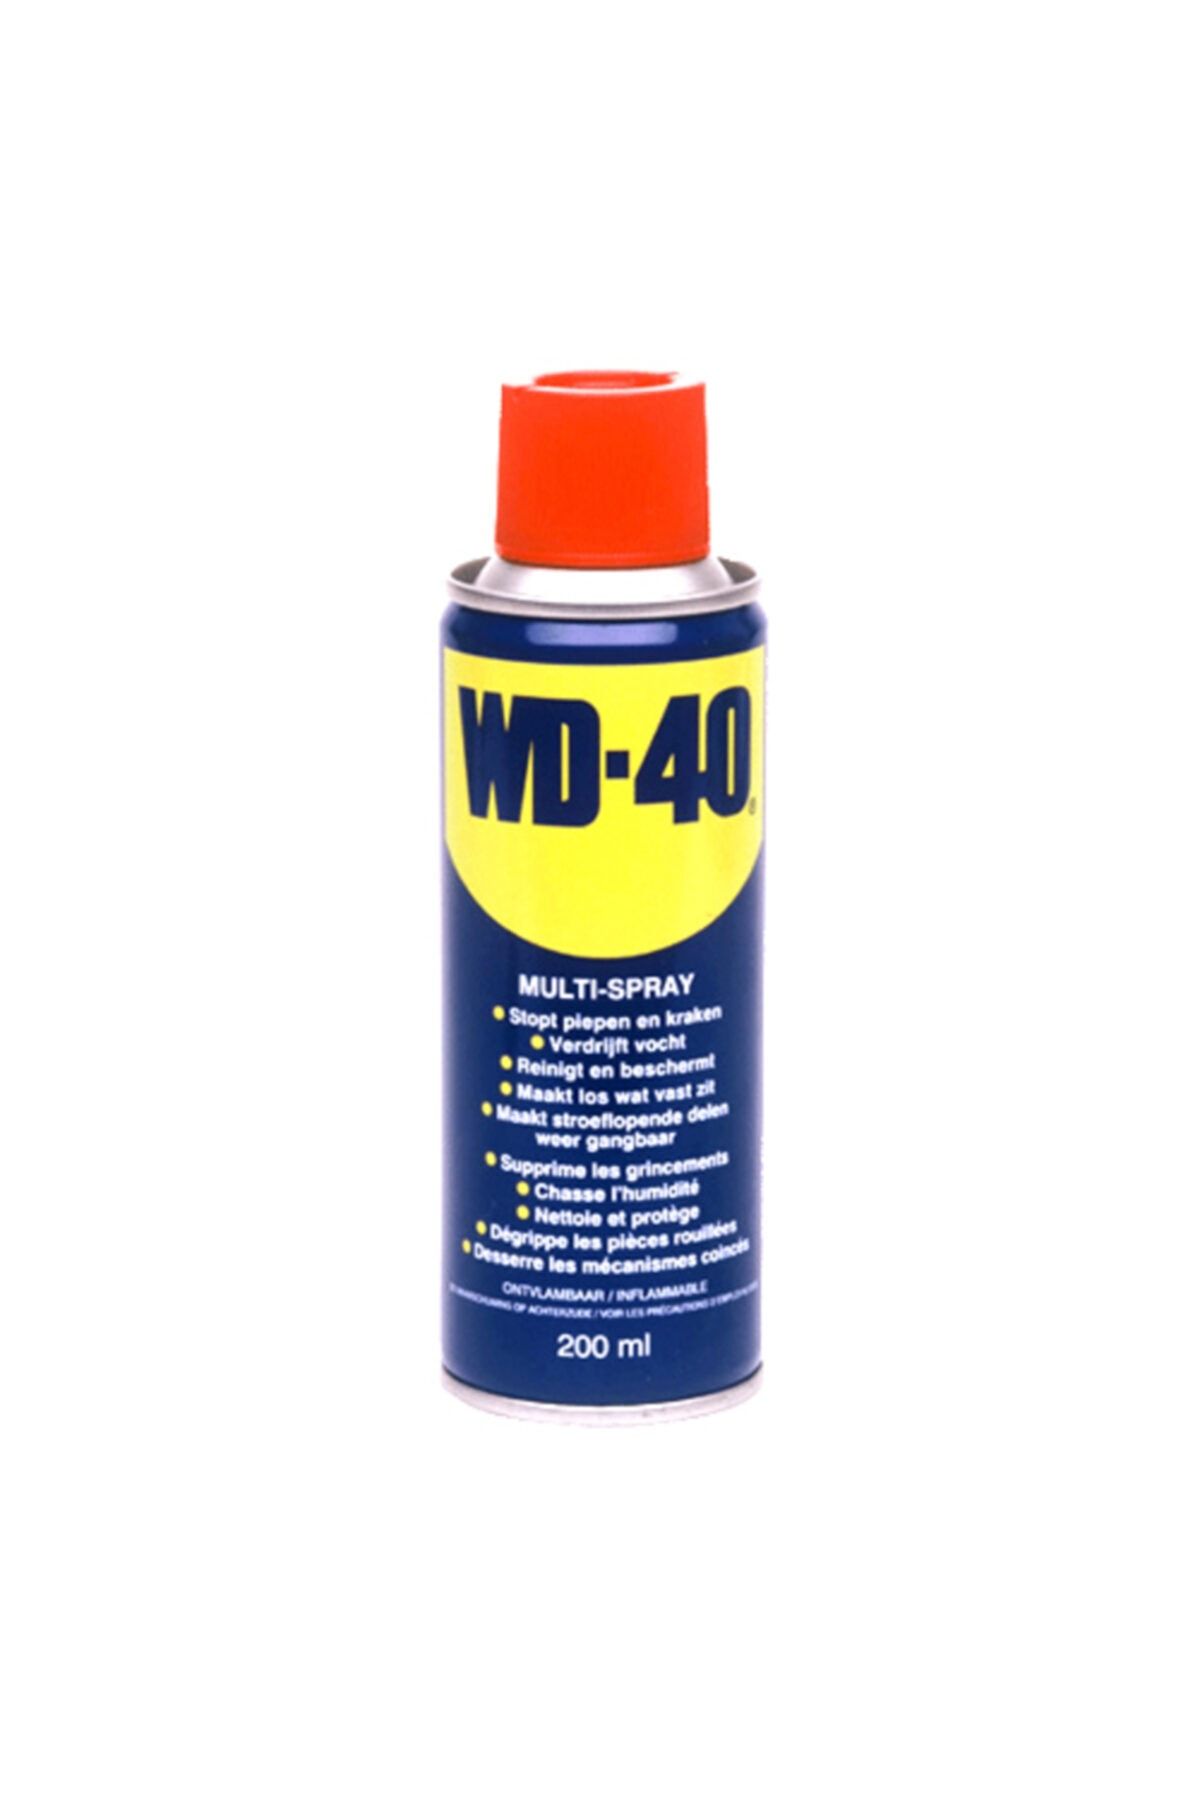 WD-40 Pas Sökücü Koruyucu Yağlayıcı 200 ml